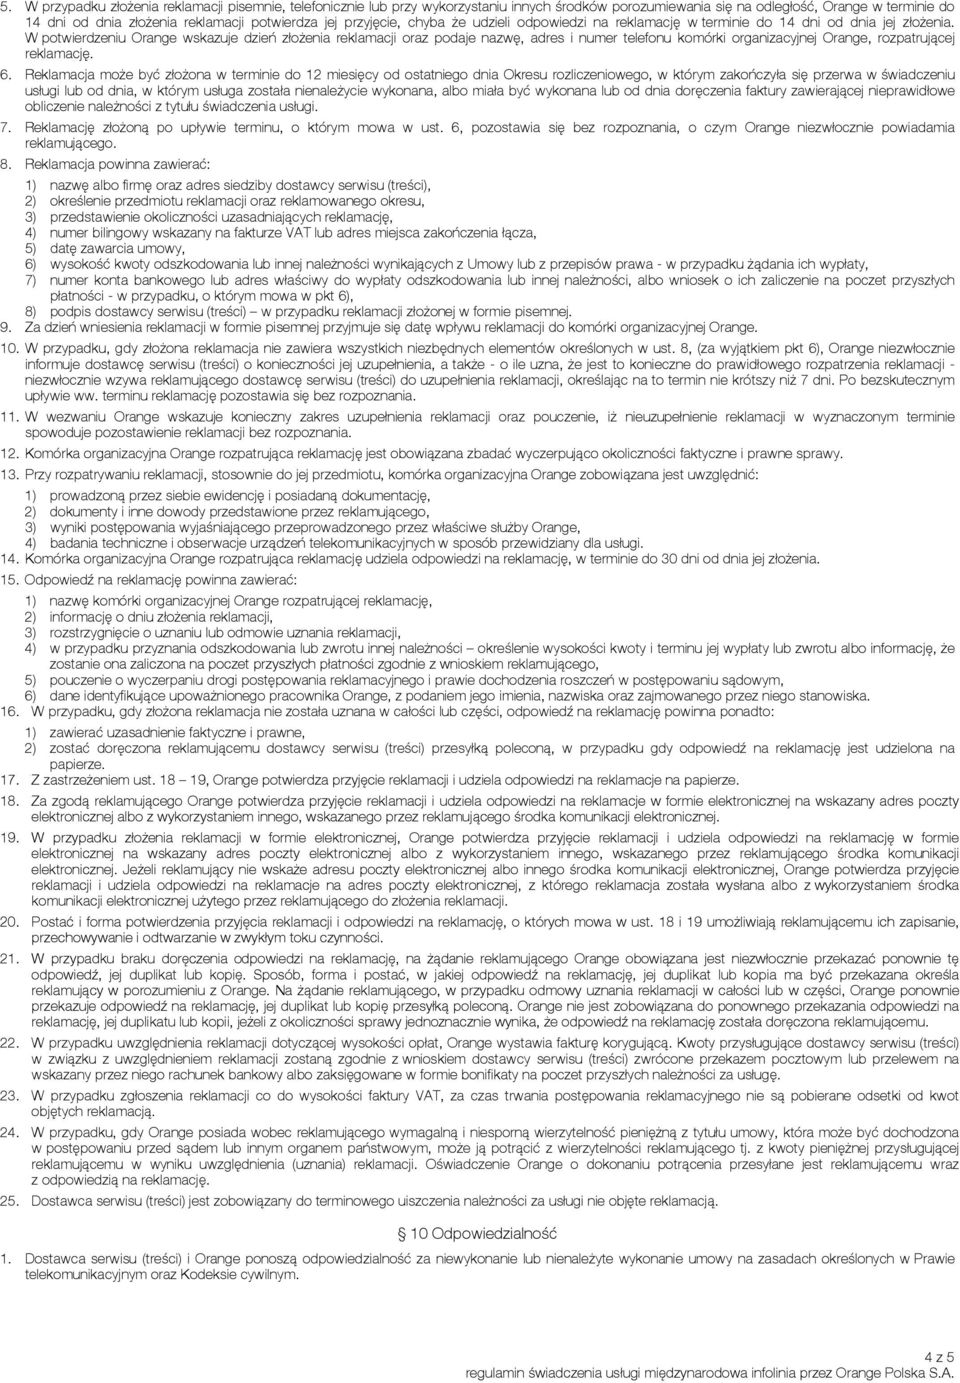 regulamin świadczenia usługi międzynarodowa infolinia przez Orange Polska  S.A. - PDF Free Download